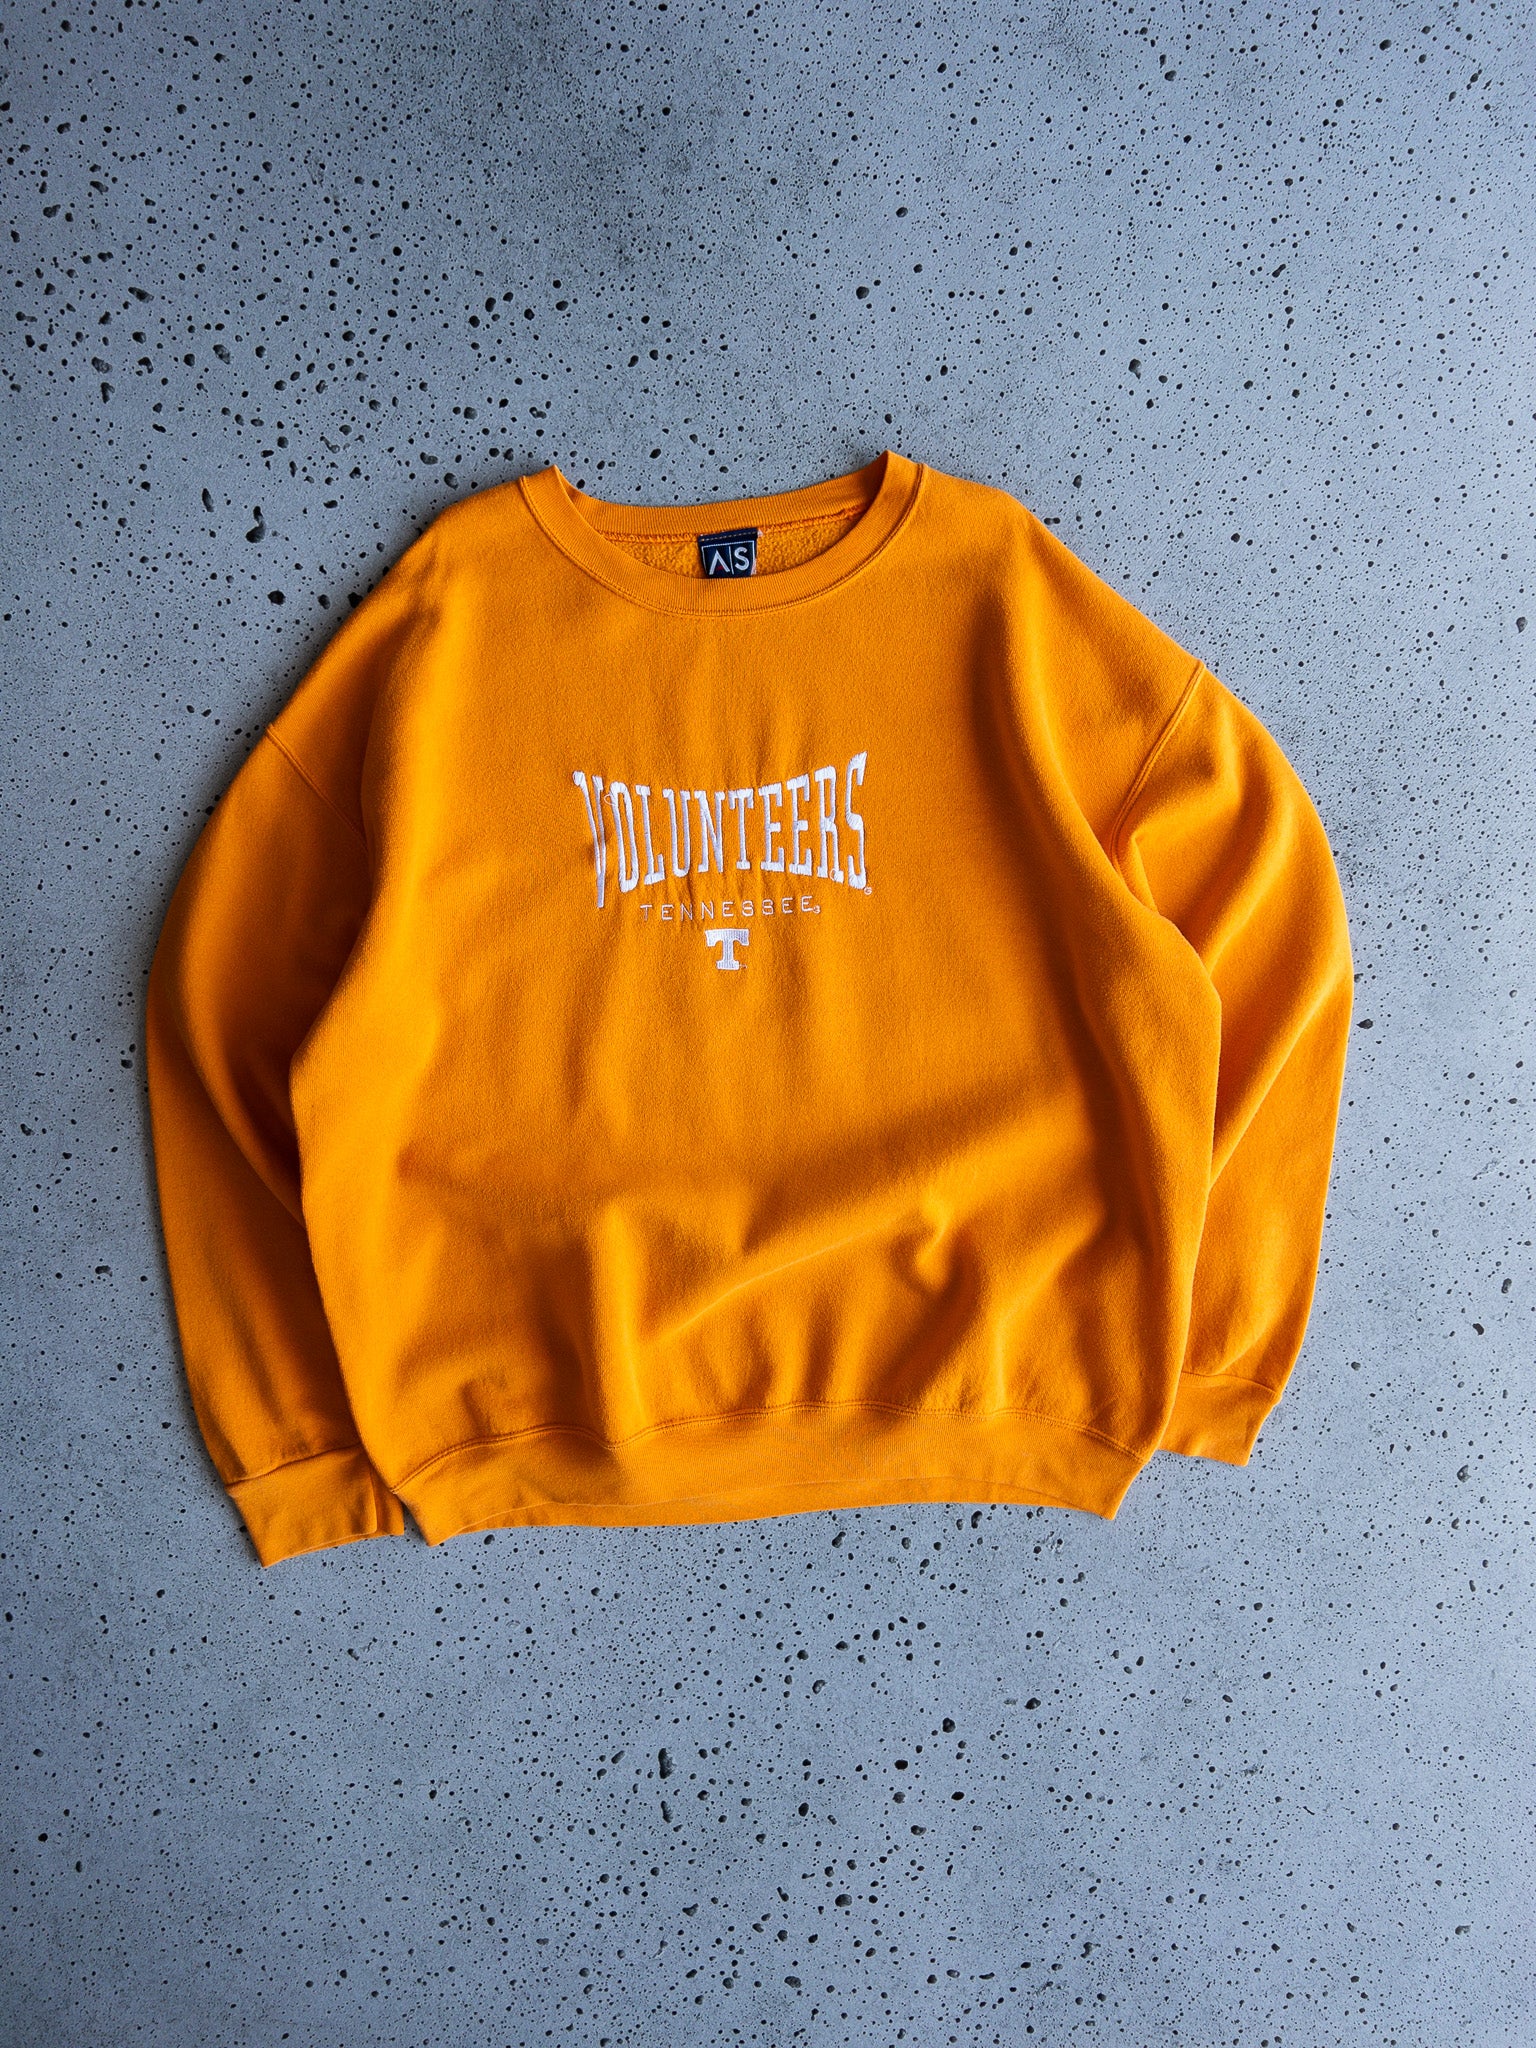 Vintage Tennessee Volunteers Sweatshirt (XL)